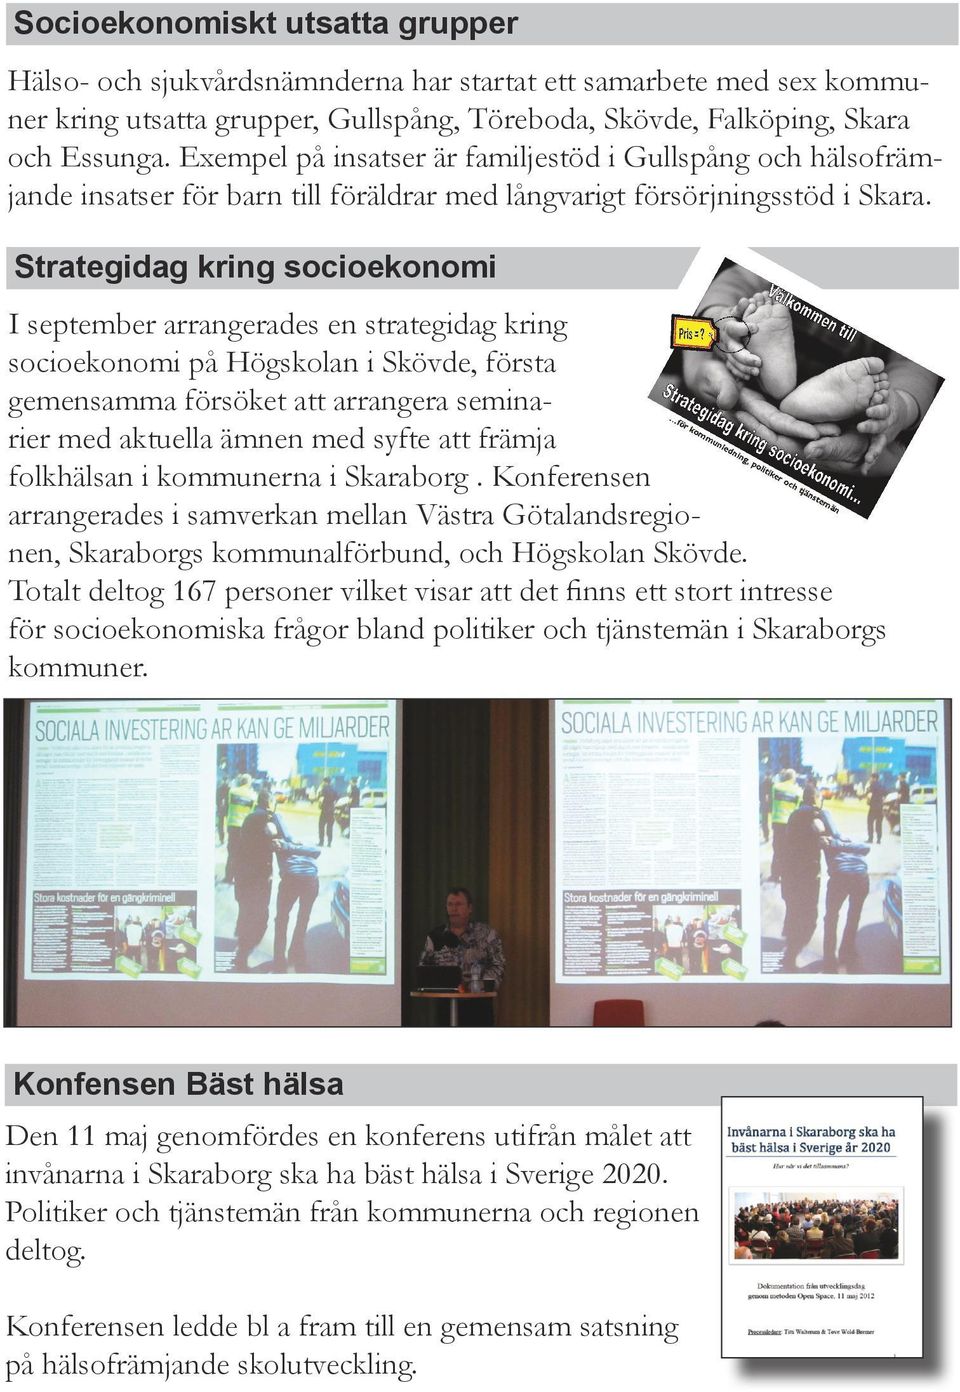 Strategidag kring socioekonomi I september arrangerades en strategidag kring socioekonomi på Högskolan i Skövde, första gemensamma försöket att arrangera seminarier med aktuella ämnen med syfte att